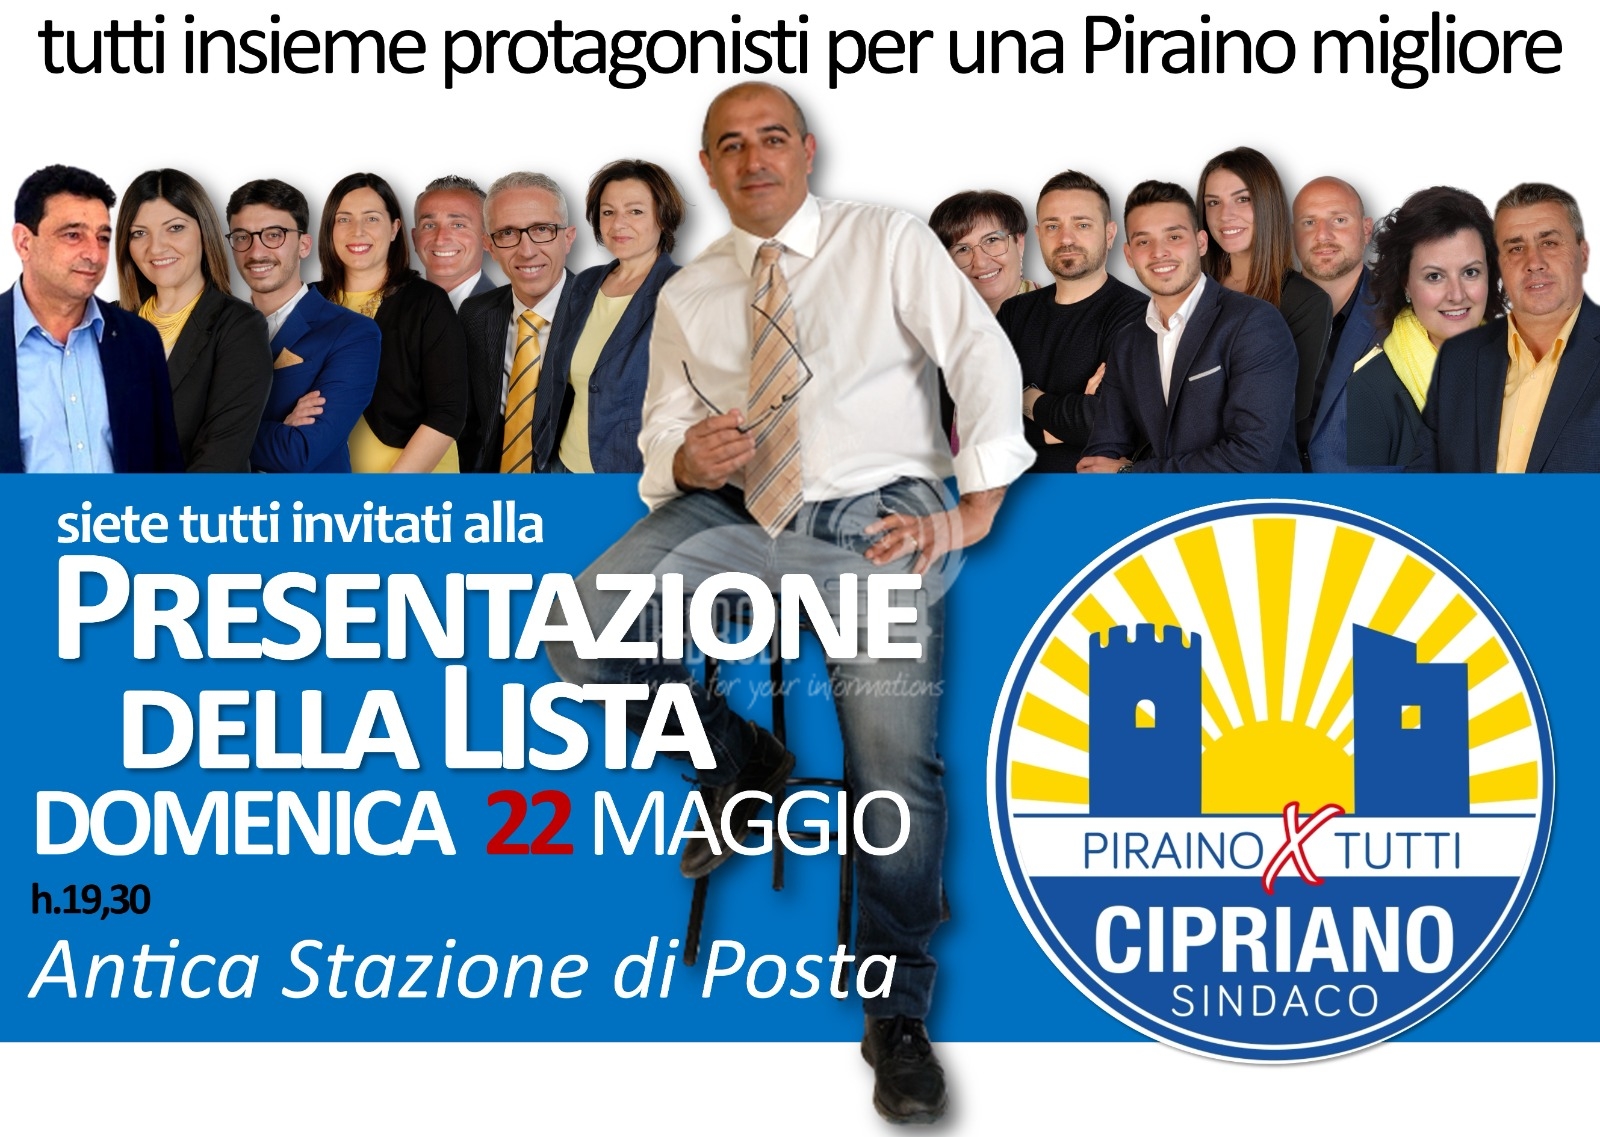 Piraino – Elezioni 2022: “PIRAINO X TUTTI” – Salvatore Cipriano presenta programma e lista il 22 maggio